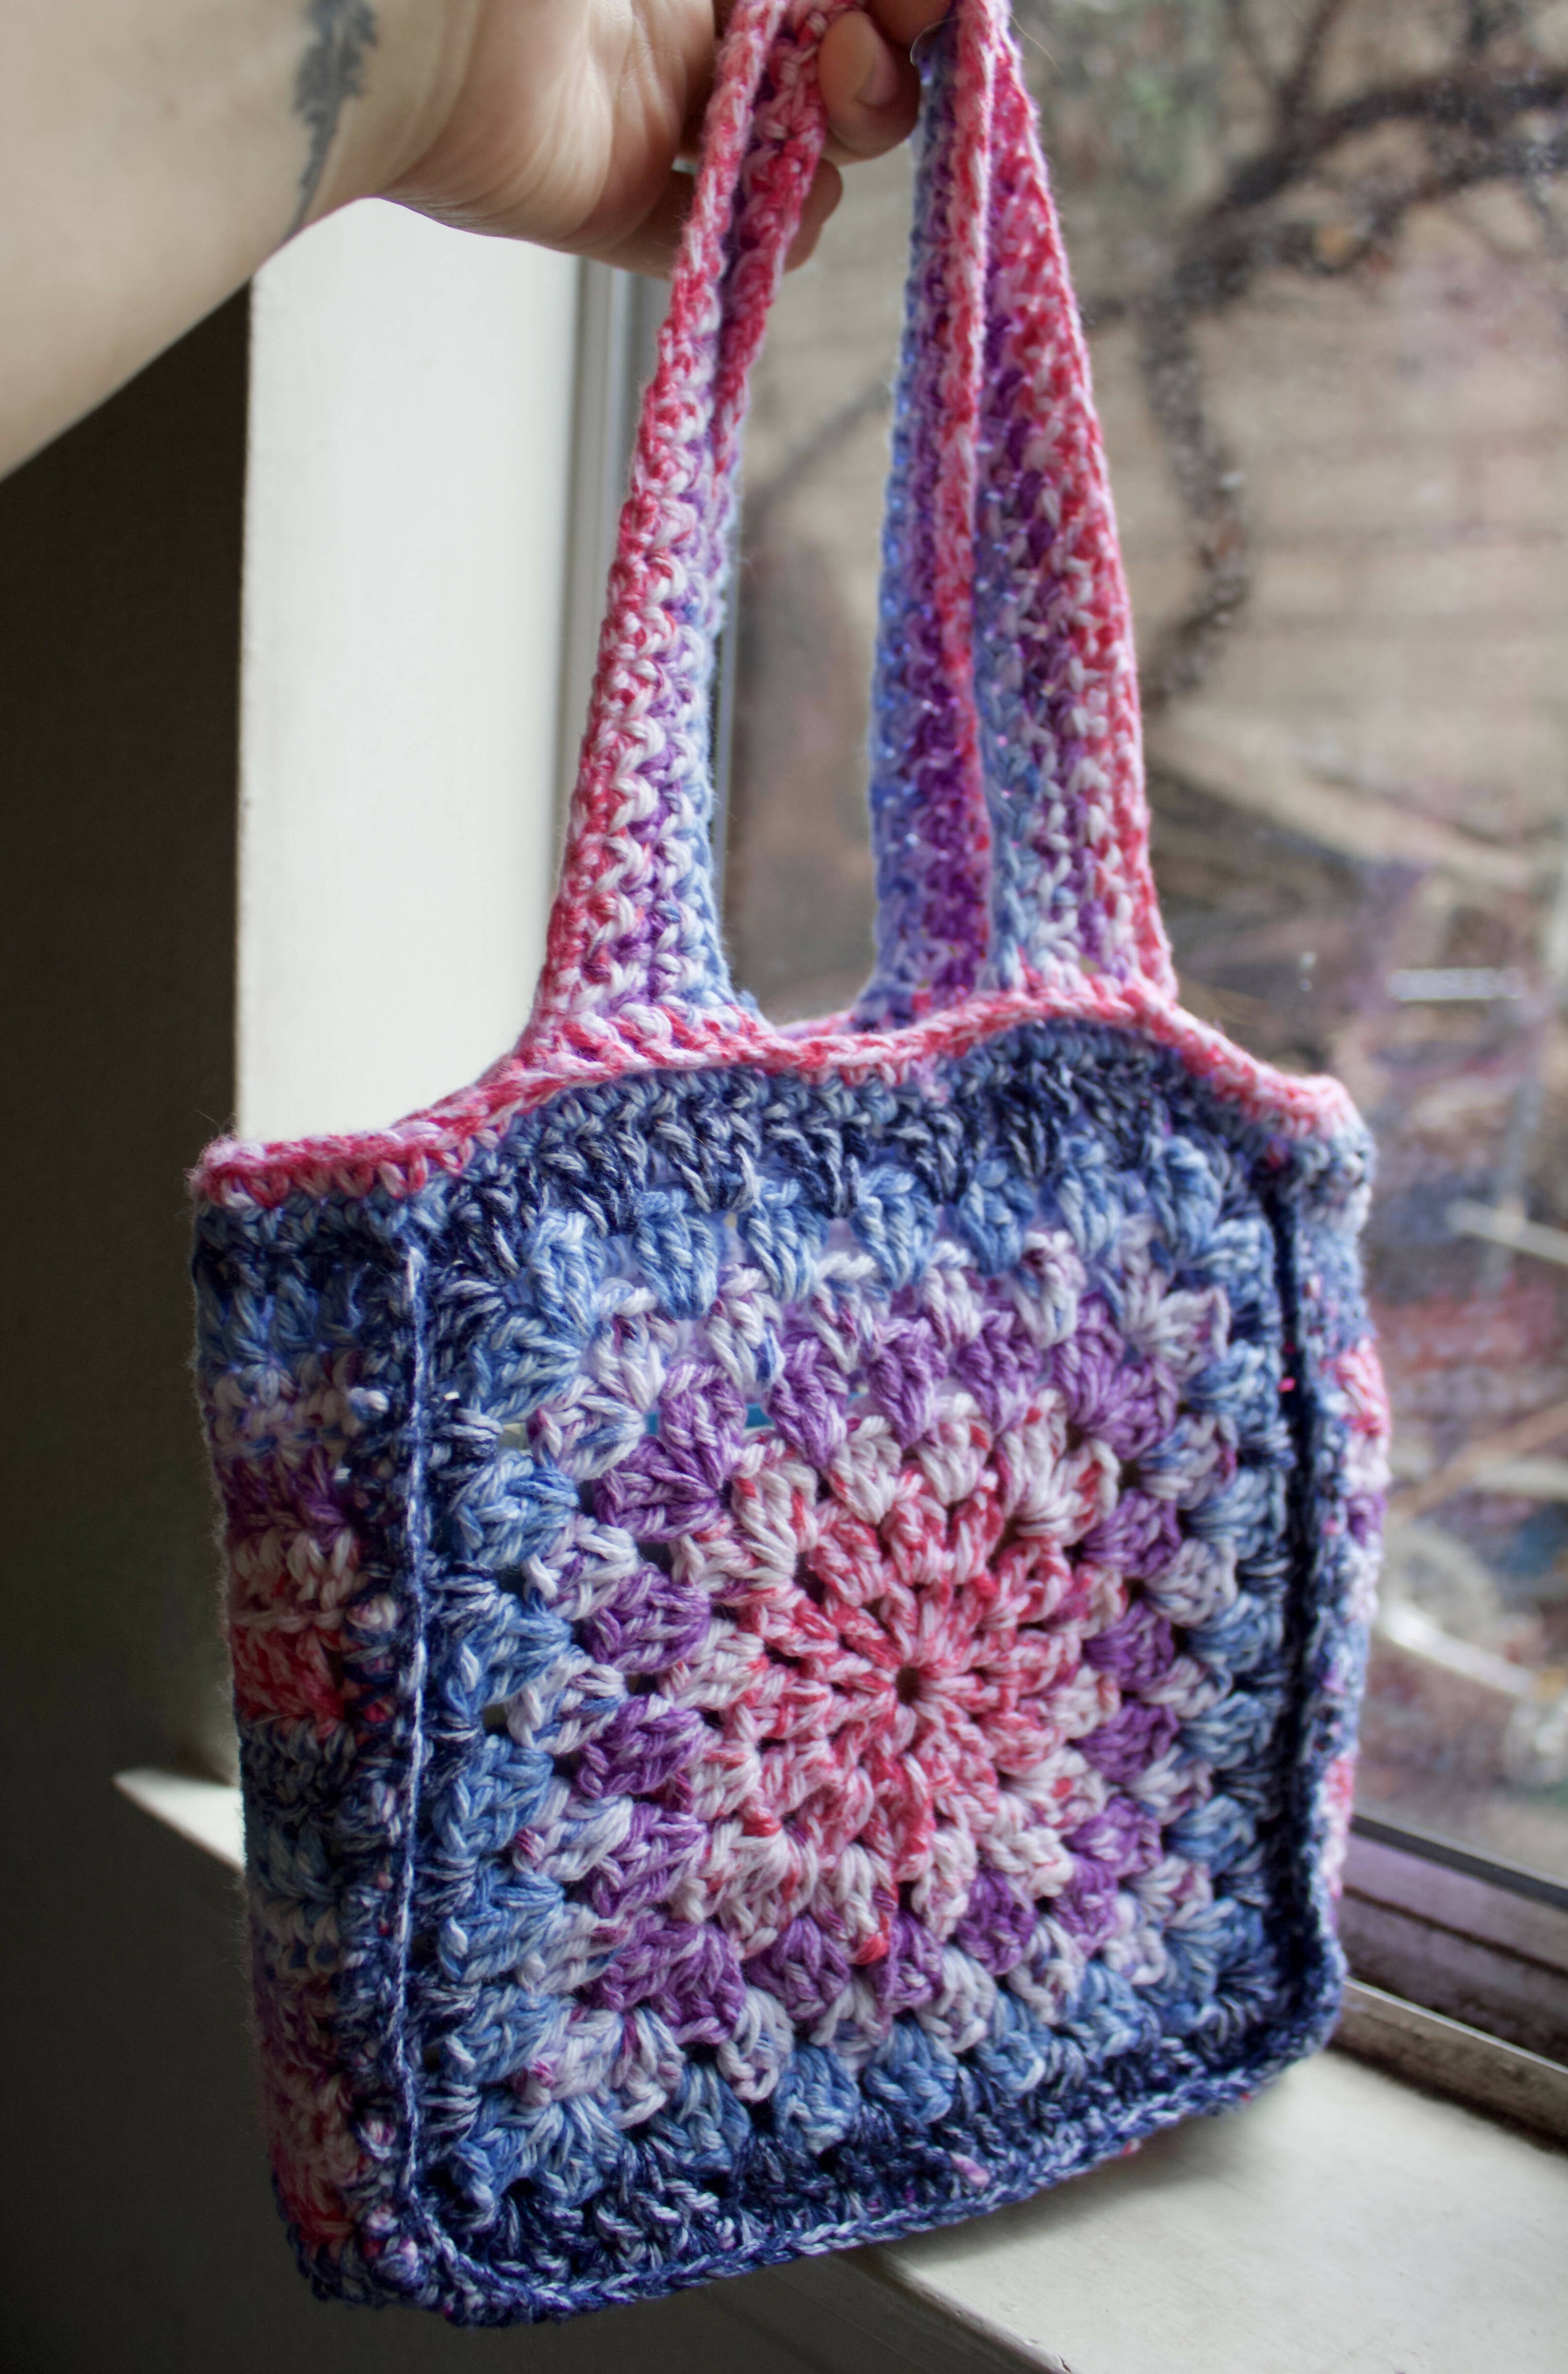 Crochet Granny Square Tote Bag